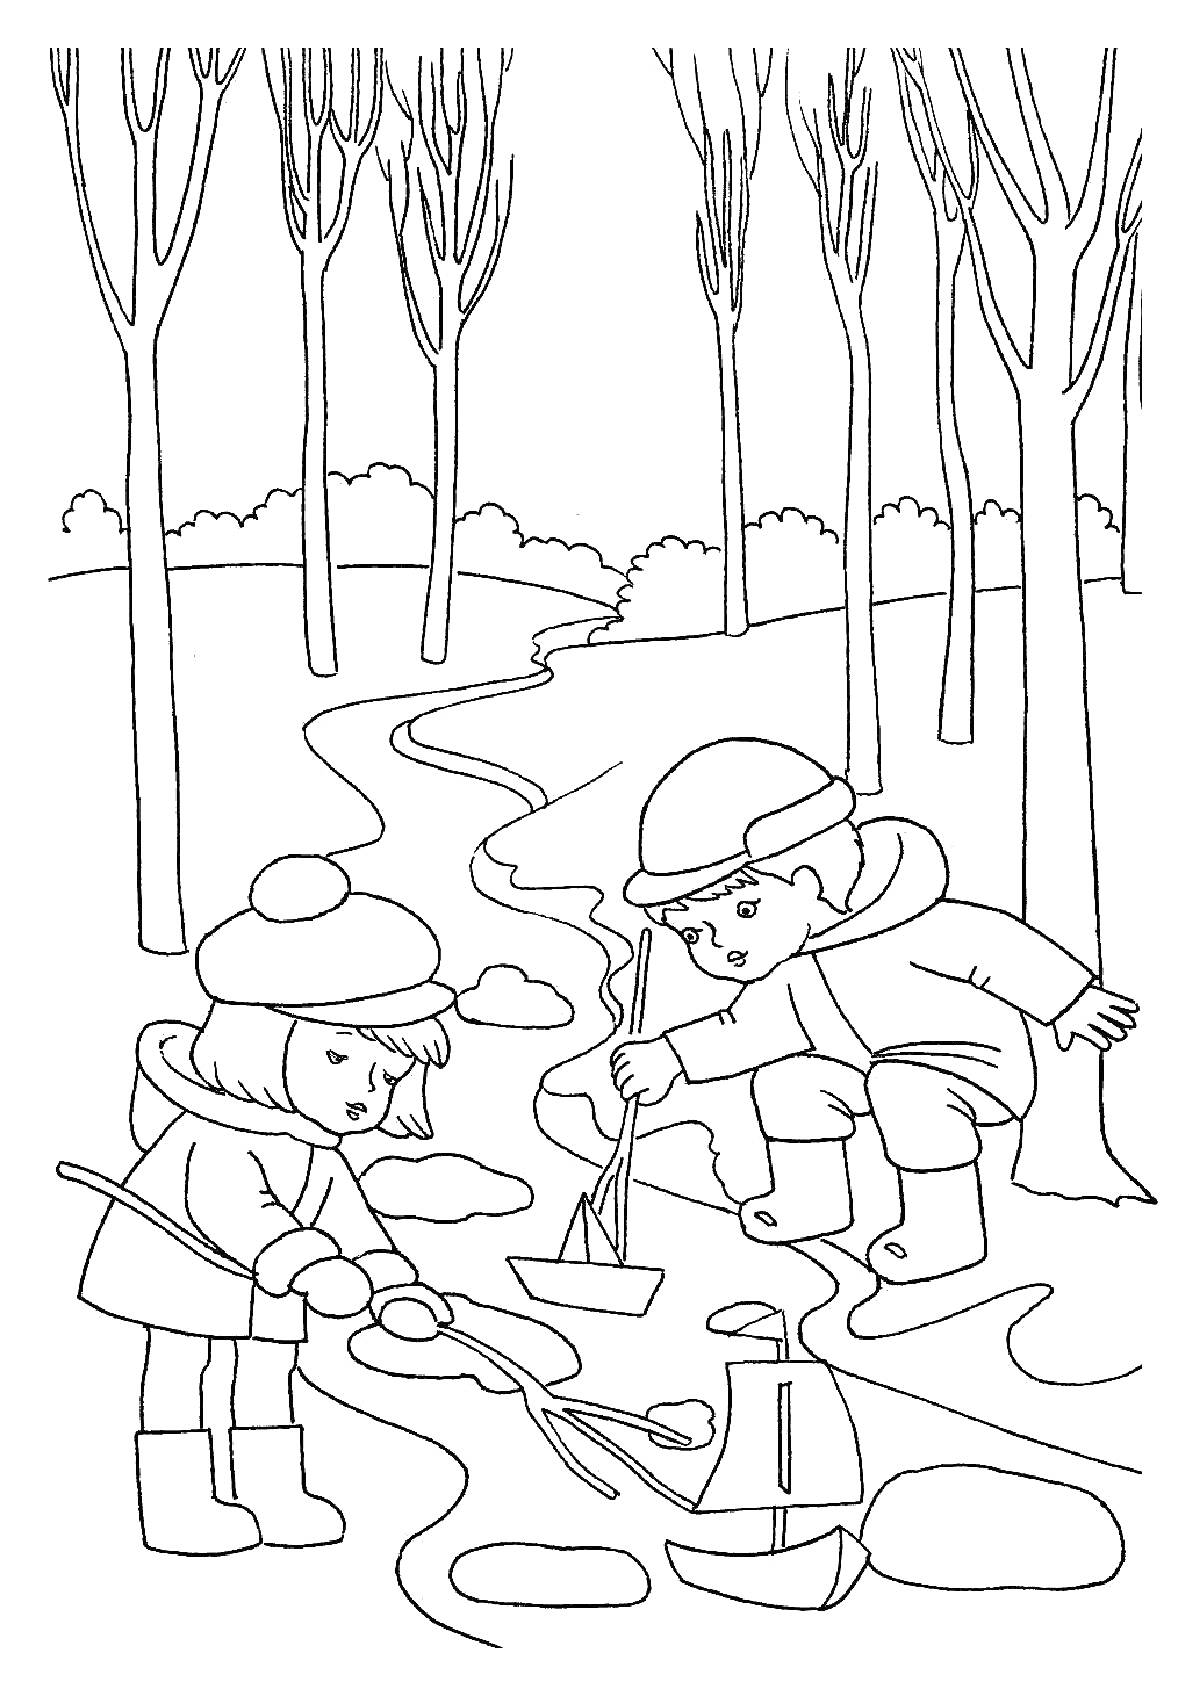 Дети, запускающие кораблики весной возле ручья в лесу